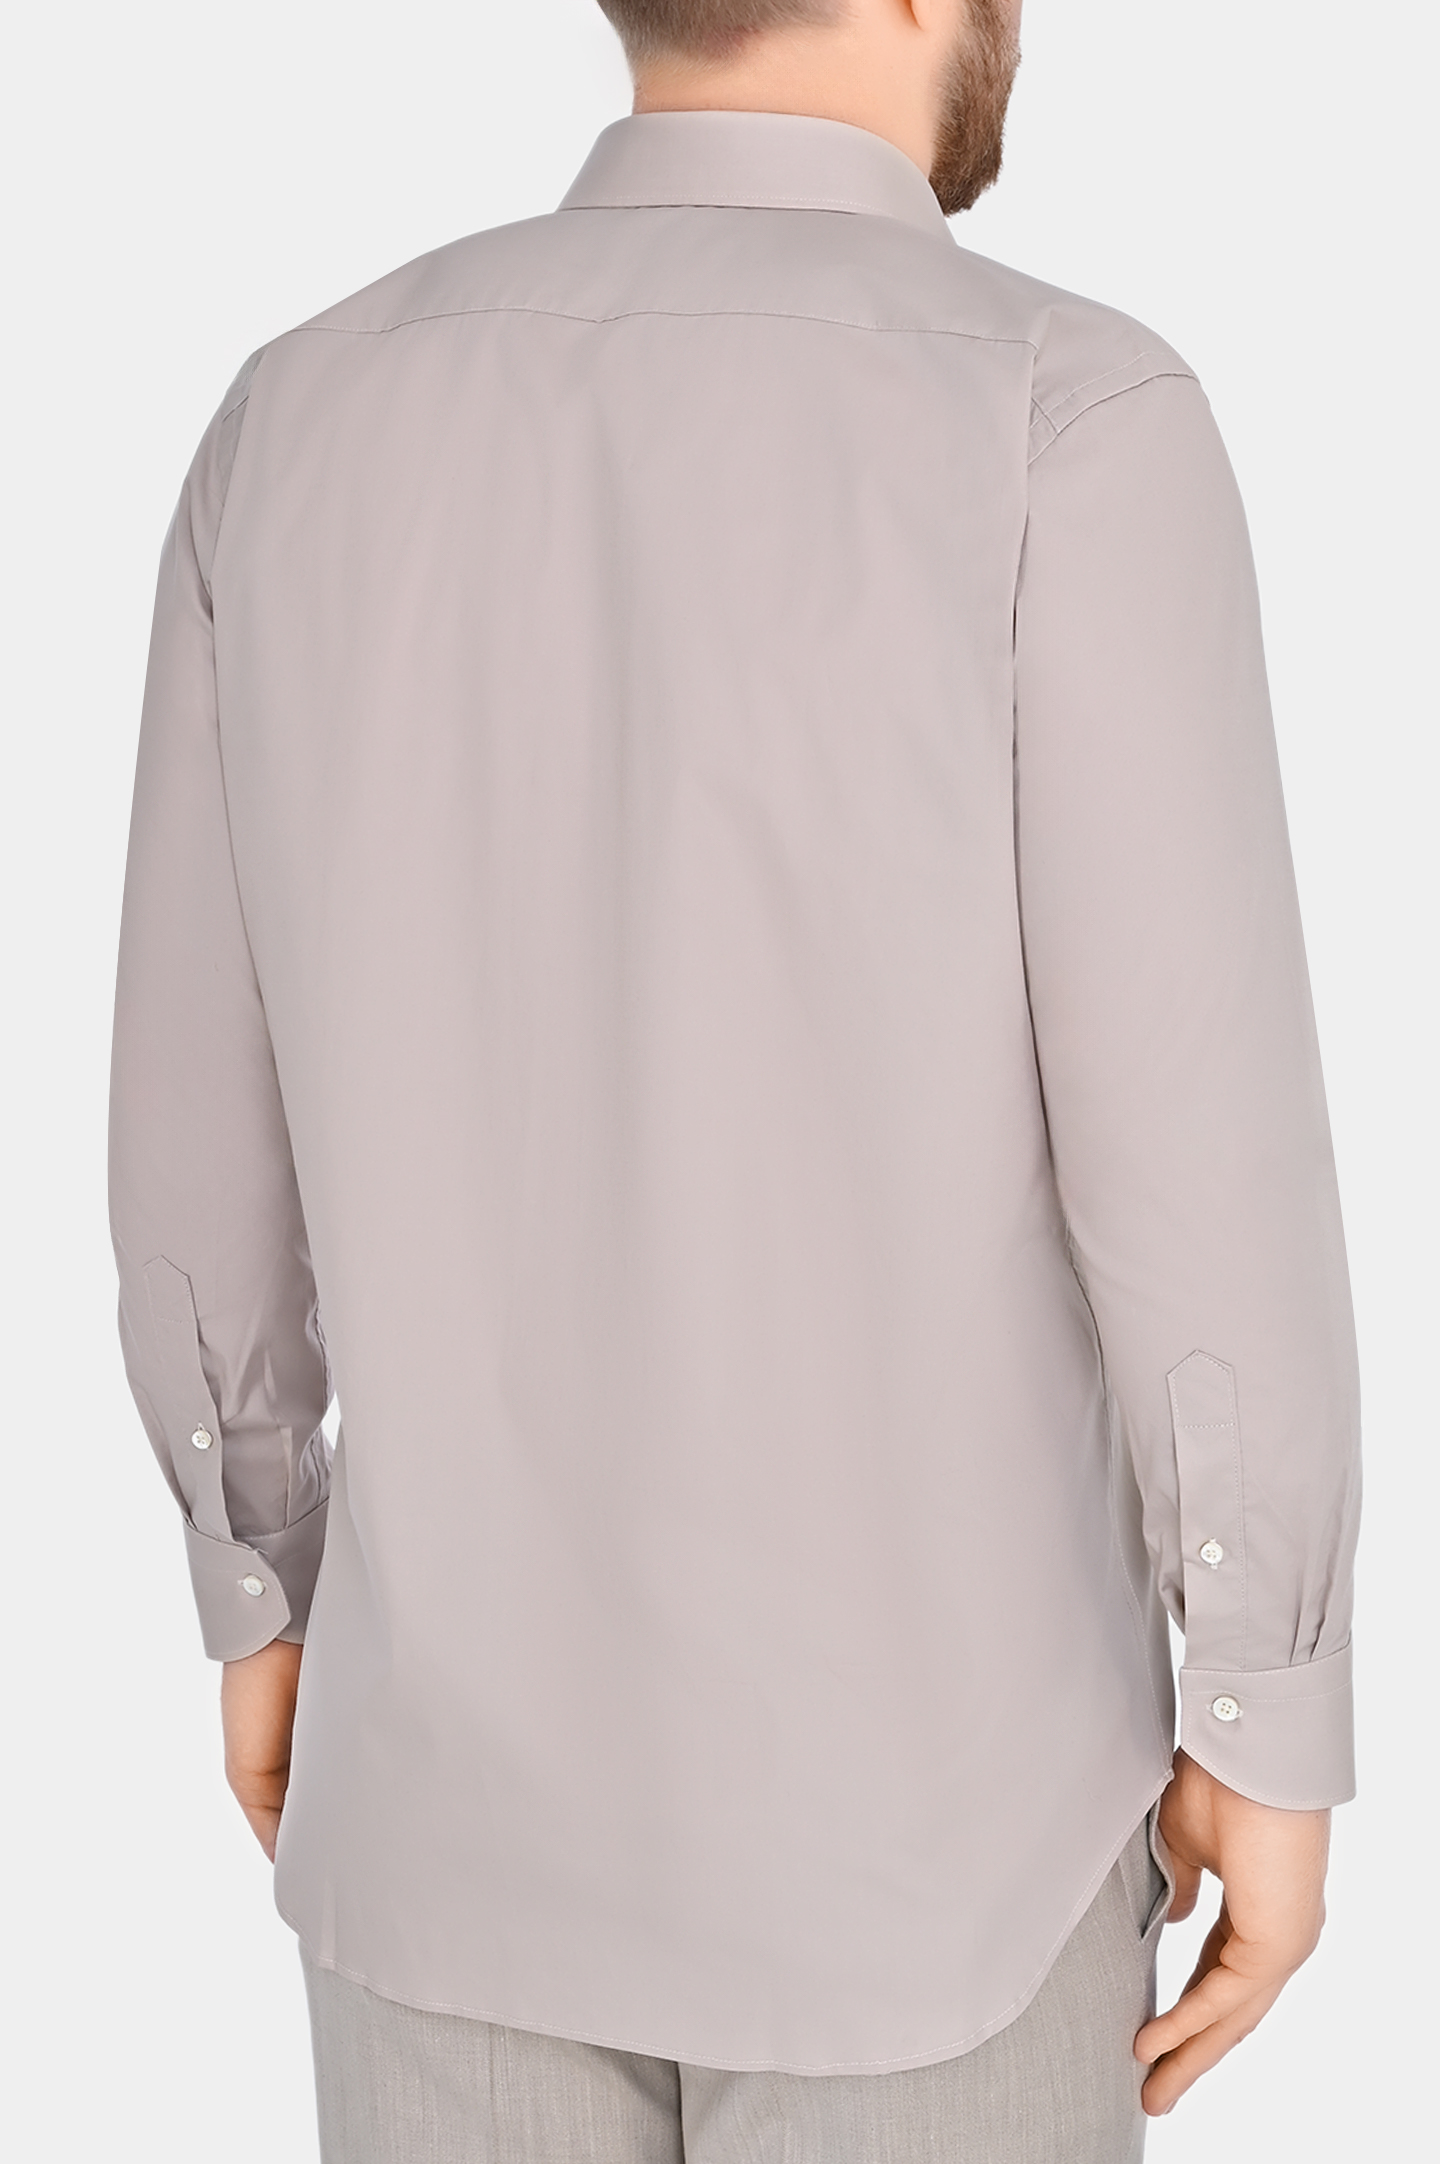 Рубашка из хлопка и эластана CANALI GD02832 7A1, цвет: Бежевый, Мужской